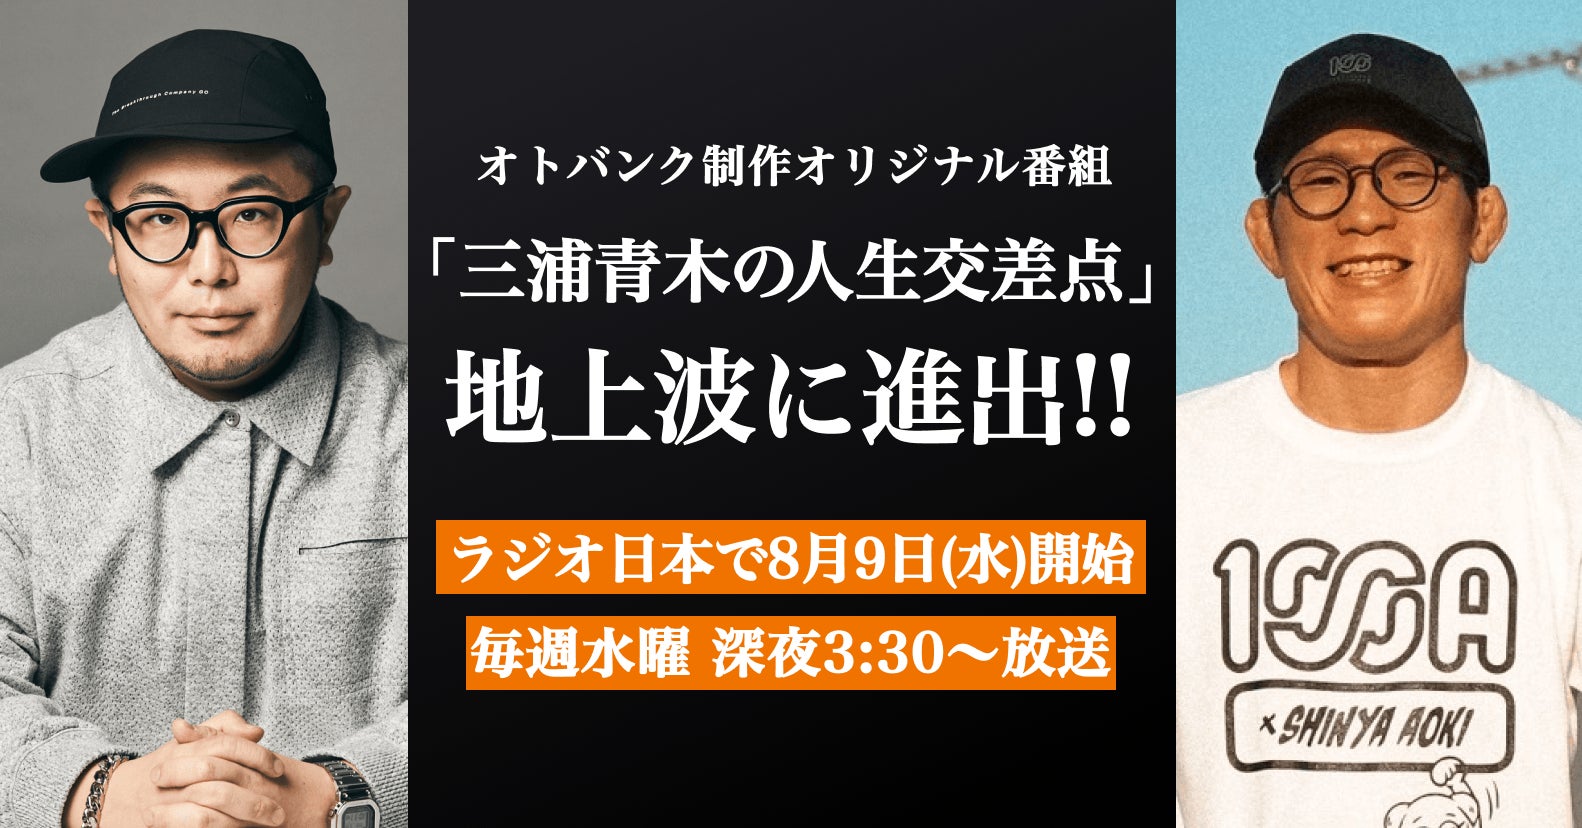 オトバンク制作のオリジナルポッドキャスト番組『三浦崇宏と青木真也の人生交差点』が8月9日（水）からラジオ日本で地上波放送開始